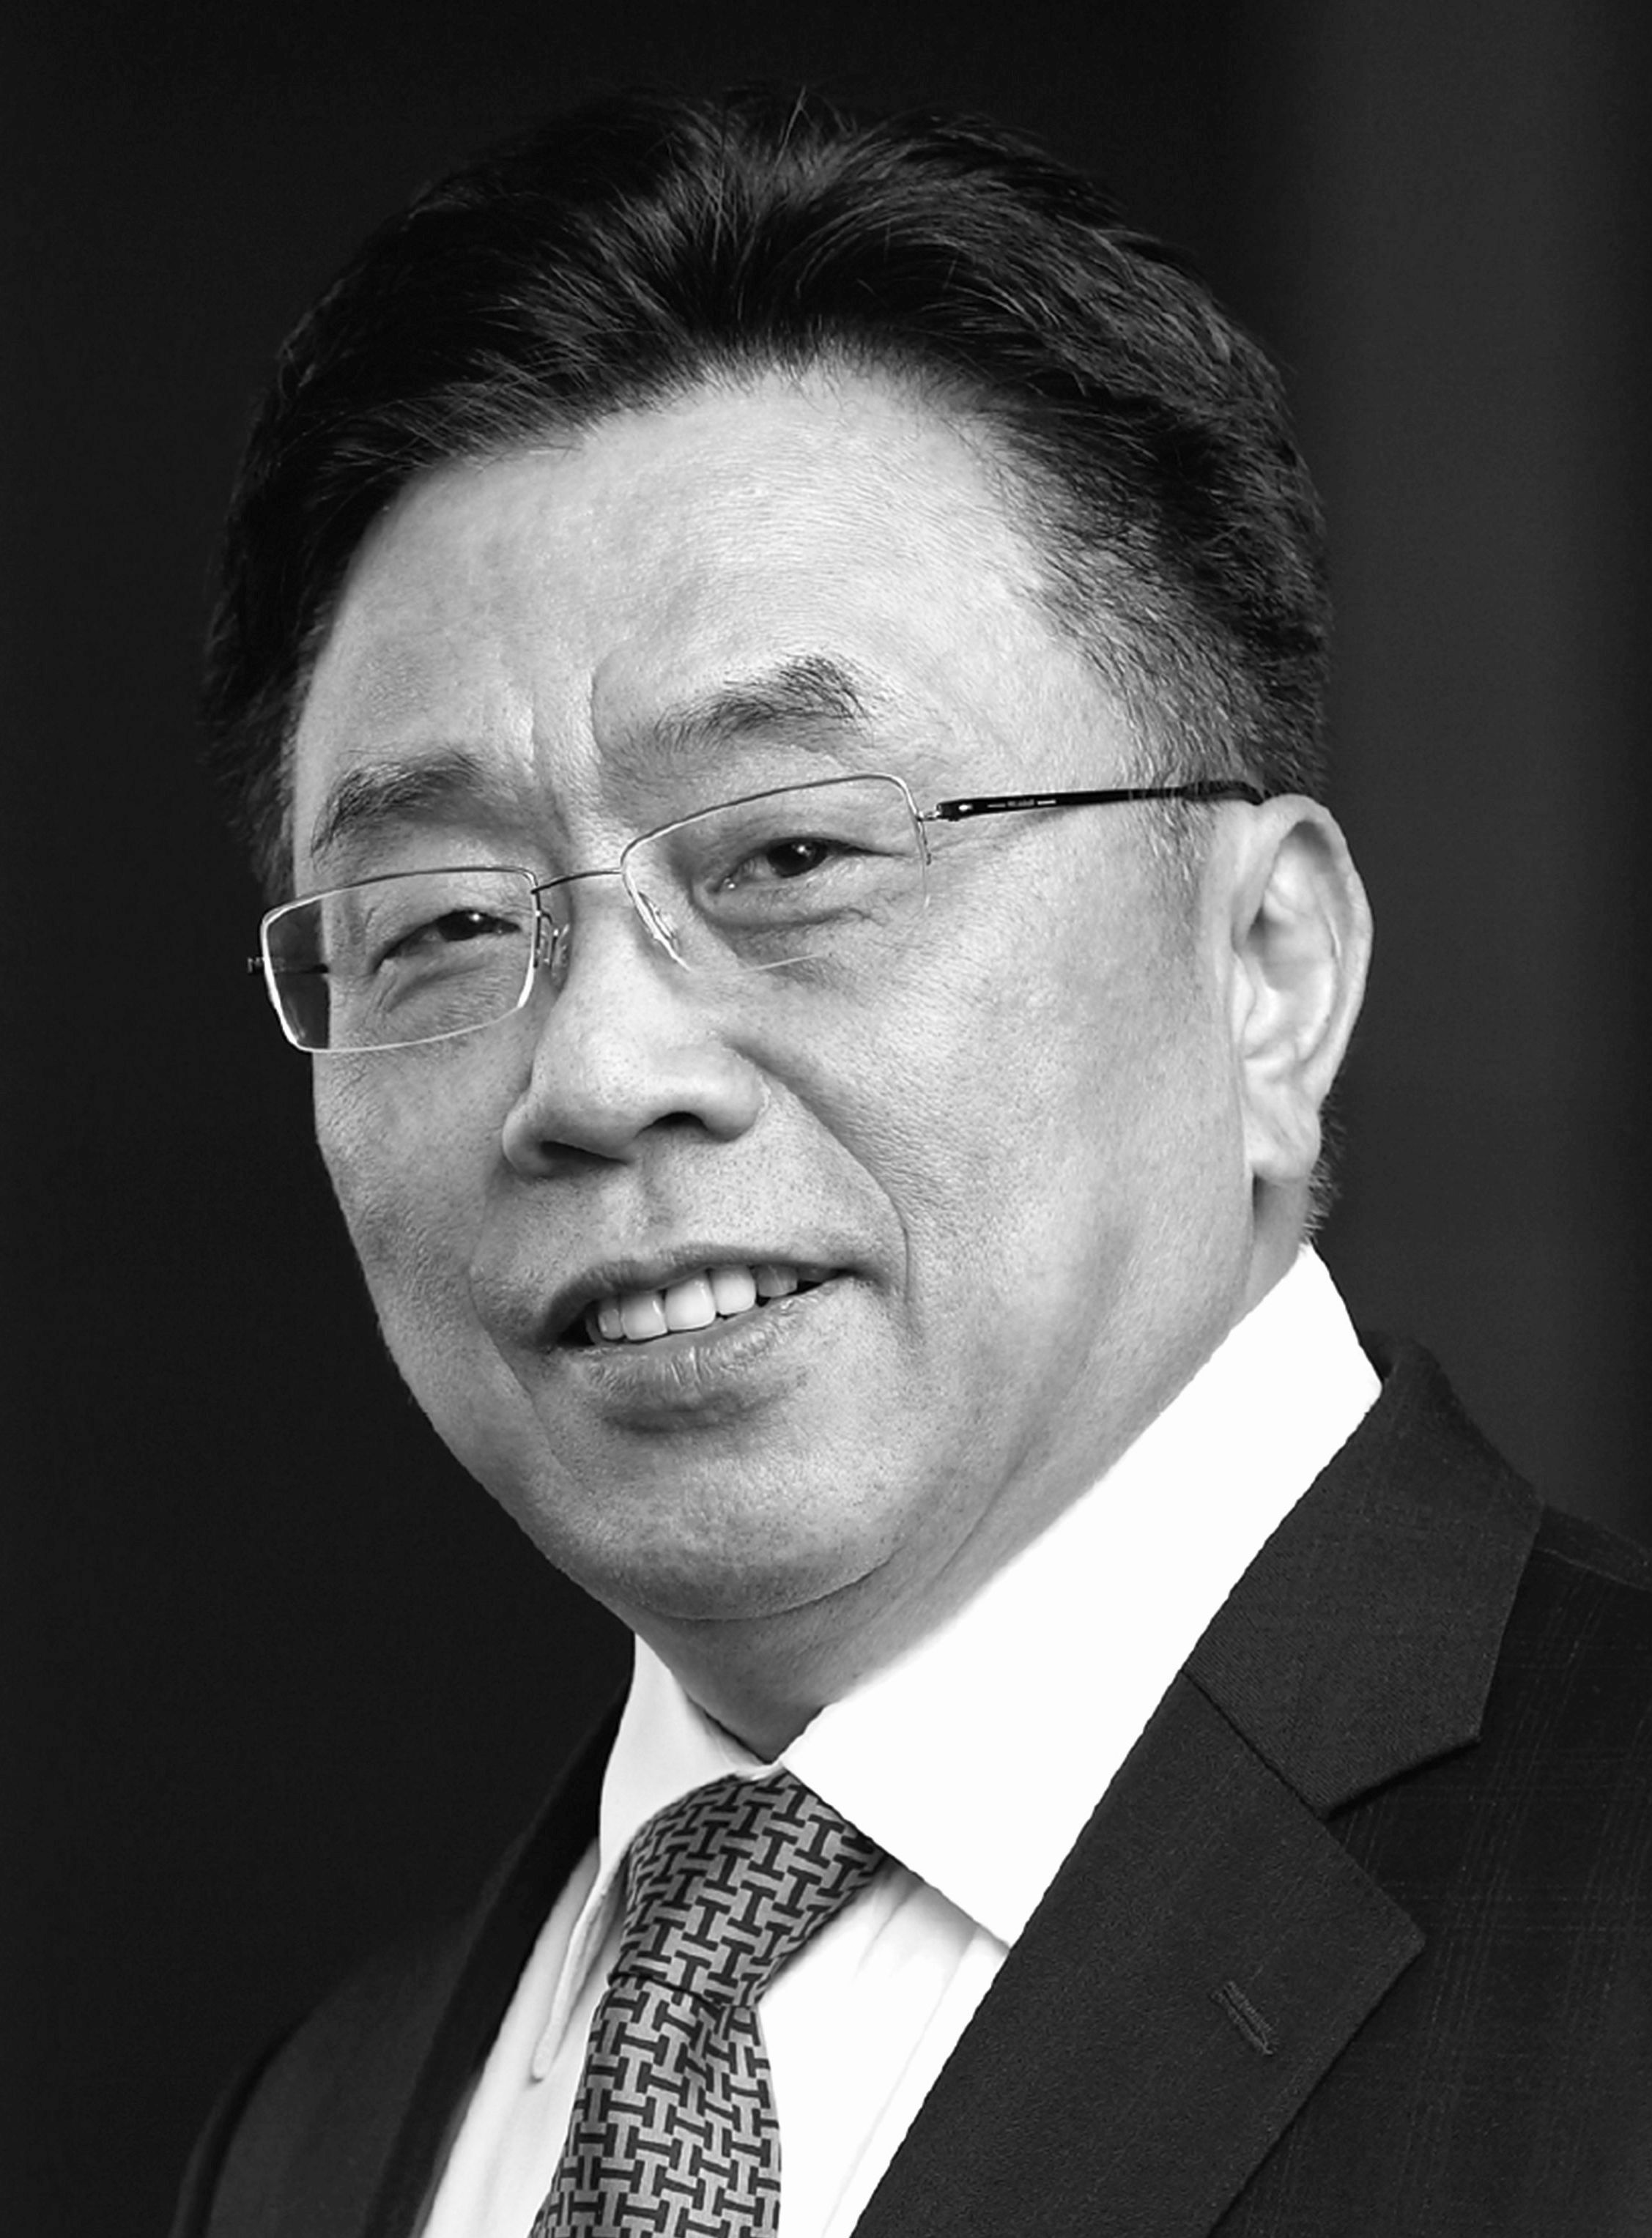 Shan Huei "Samuel" Kuo